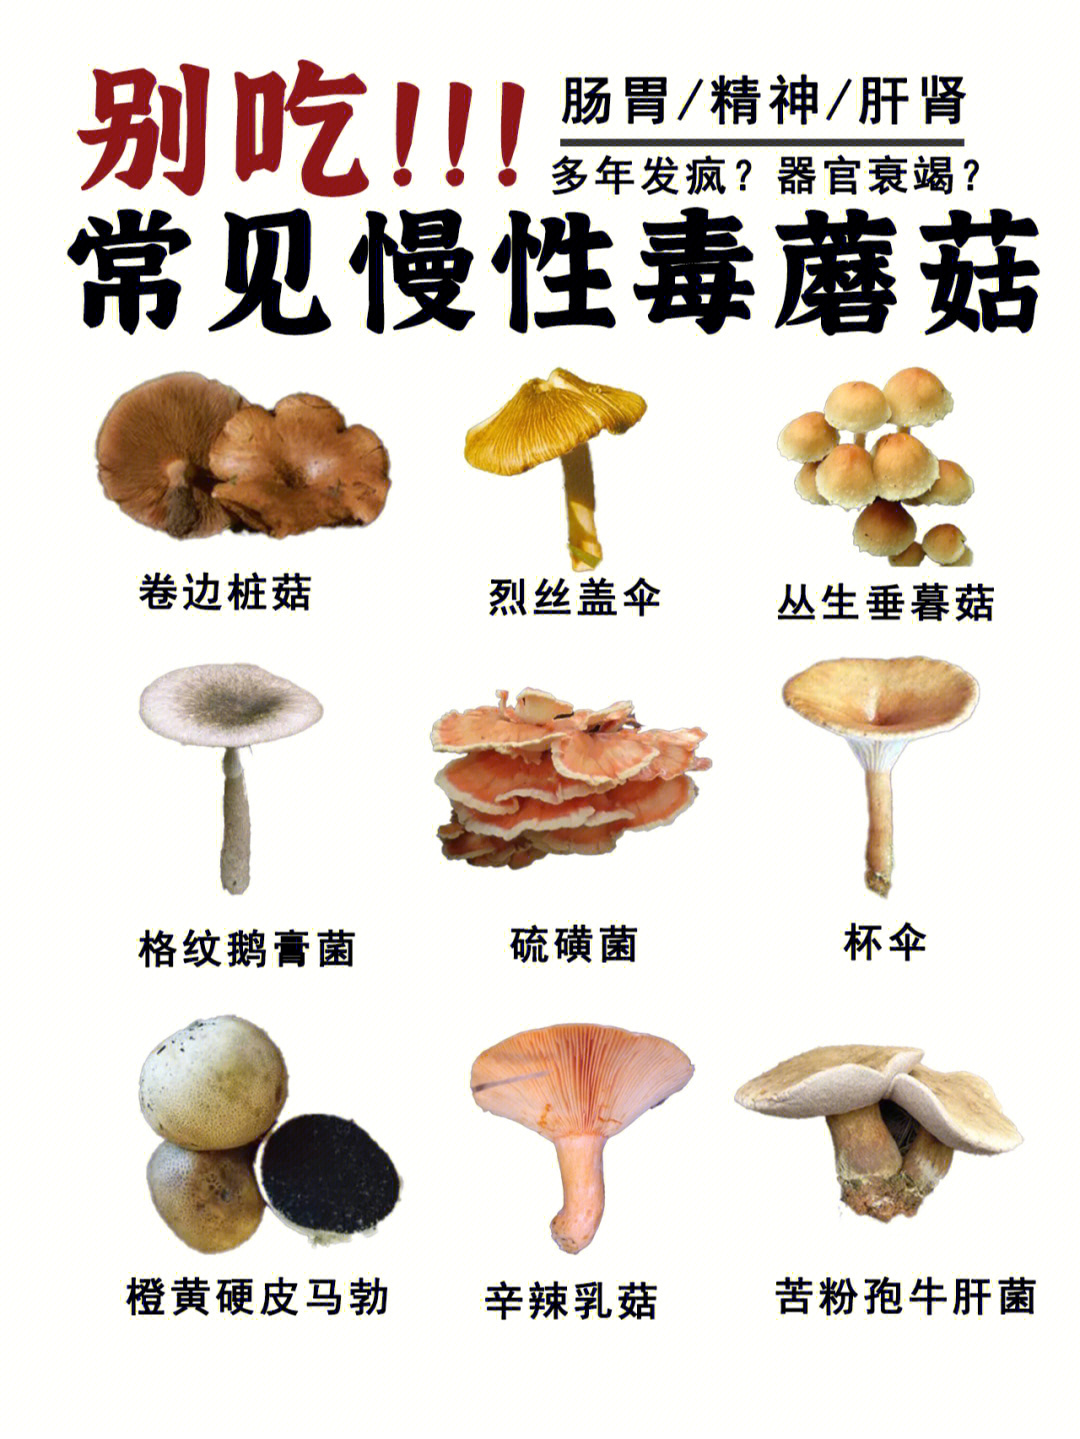 毒蘑菇图片名字图片